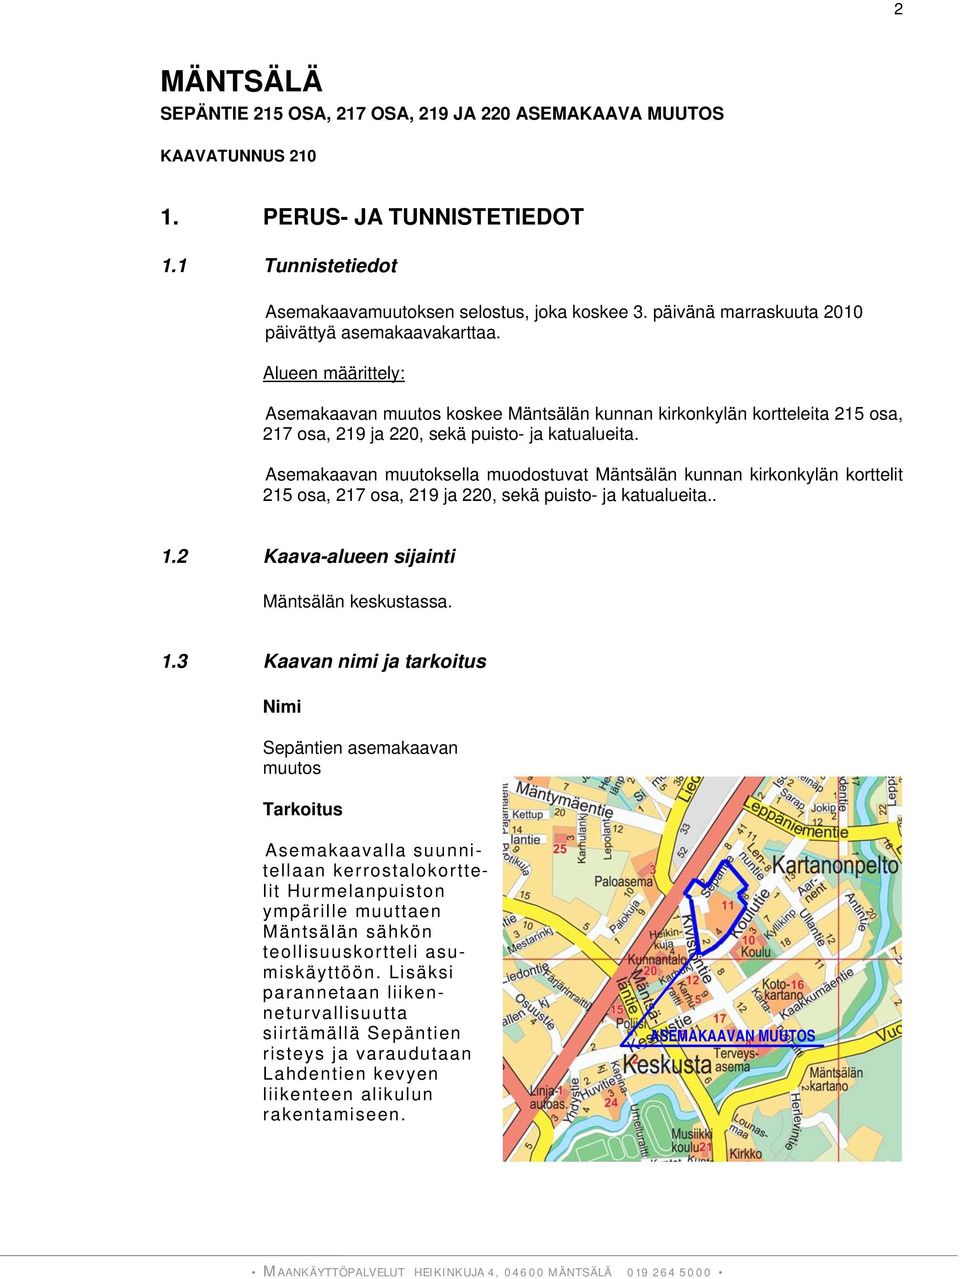 Asemakaavan muutoksella muodostuvat Mäntsälän kunnan kirkonkylän korttelit 215 osa, 217 osa, 219 ja 220, sekä puisto- ja katualueita.. 1.